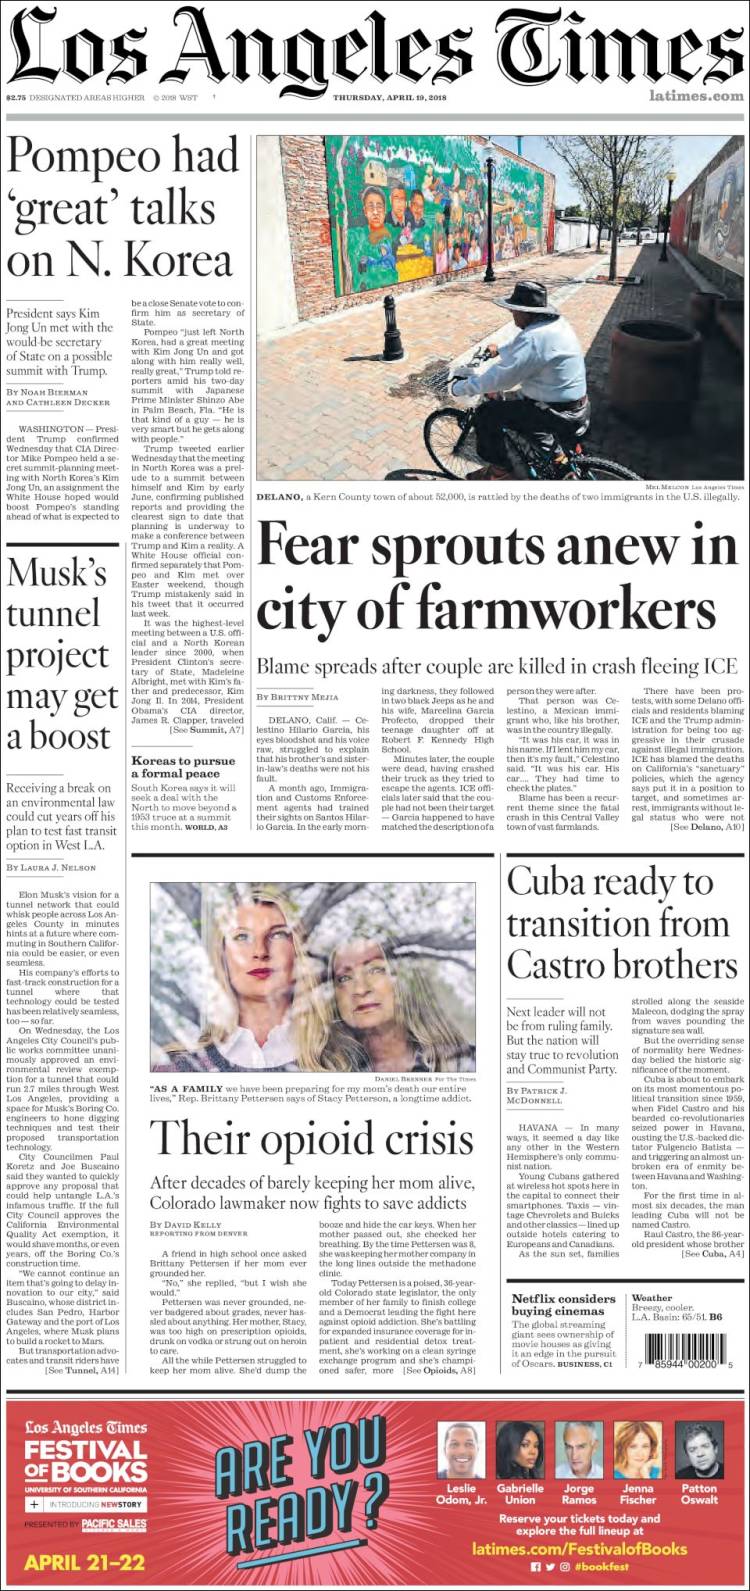 صفحه اول روزنامه لس آنجلس تایمز/ پومپئو گفت وگوی بسیار خوبی درباره کره شمالی داشته است 